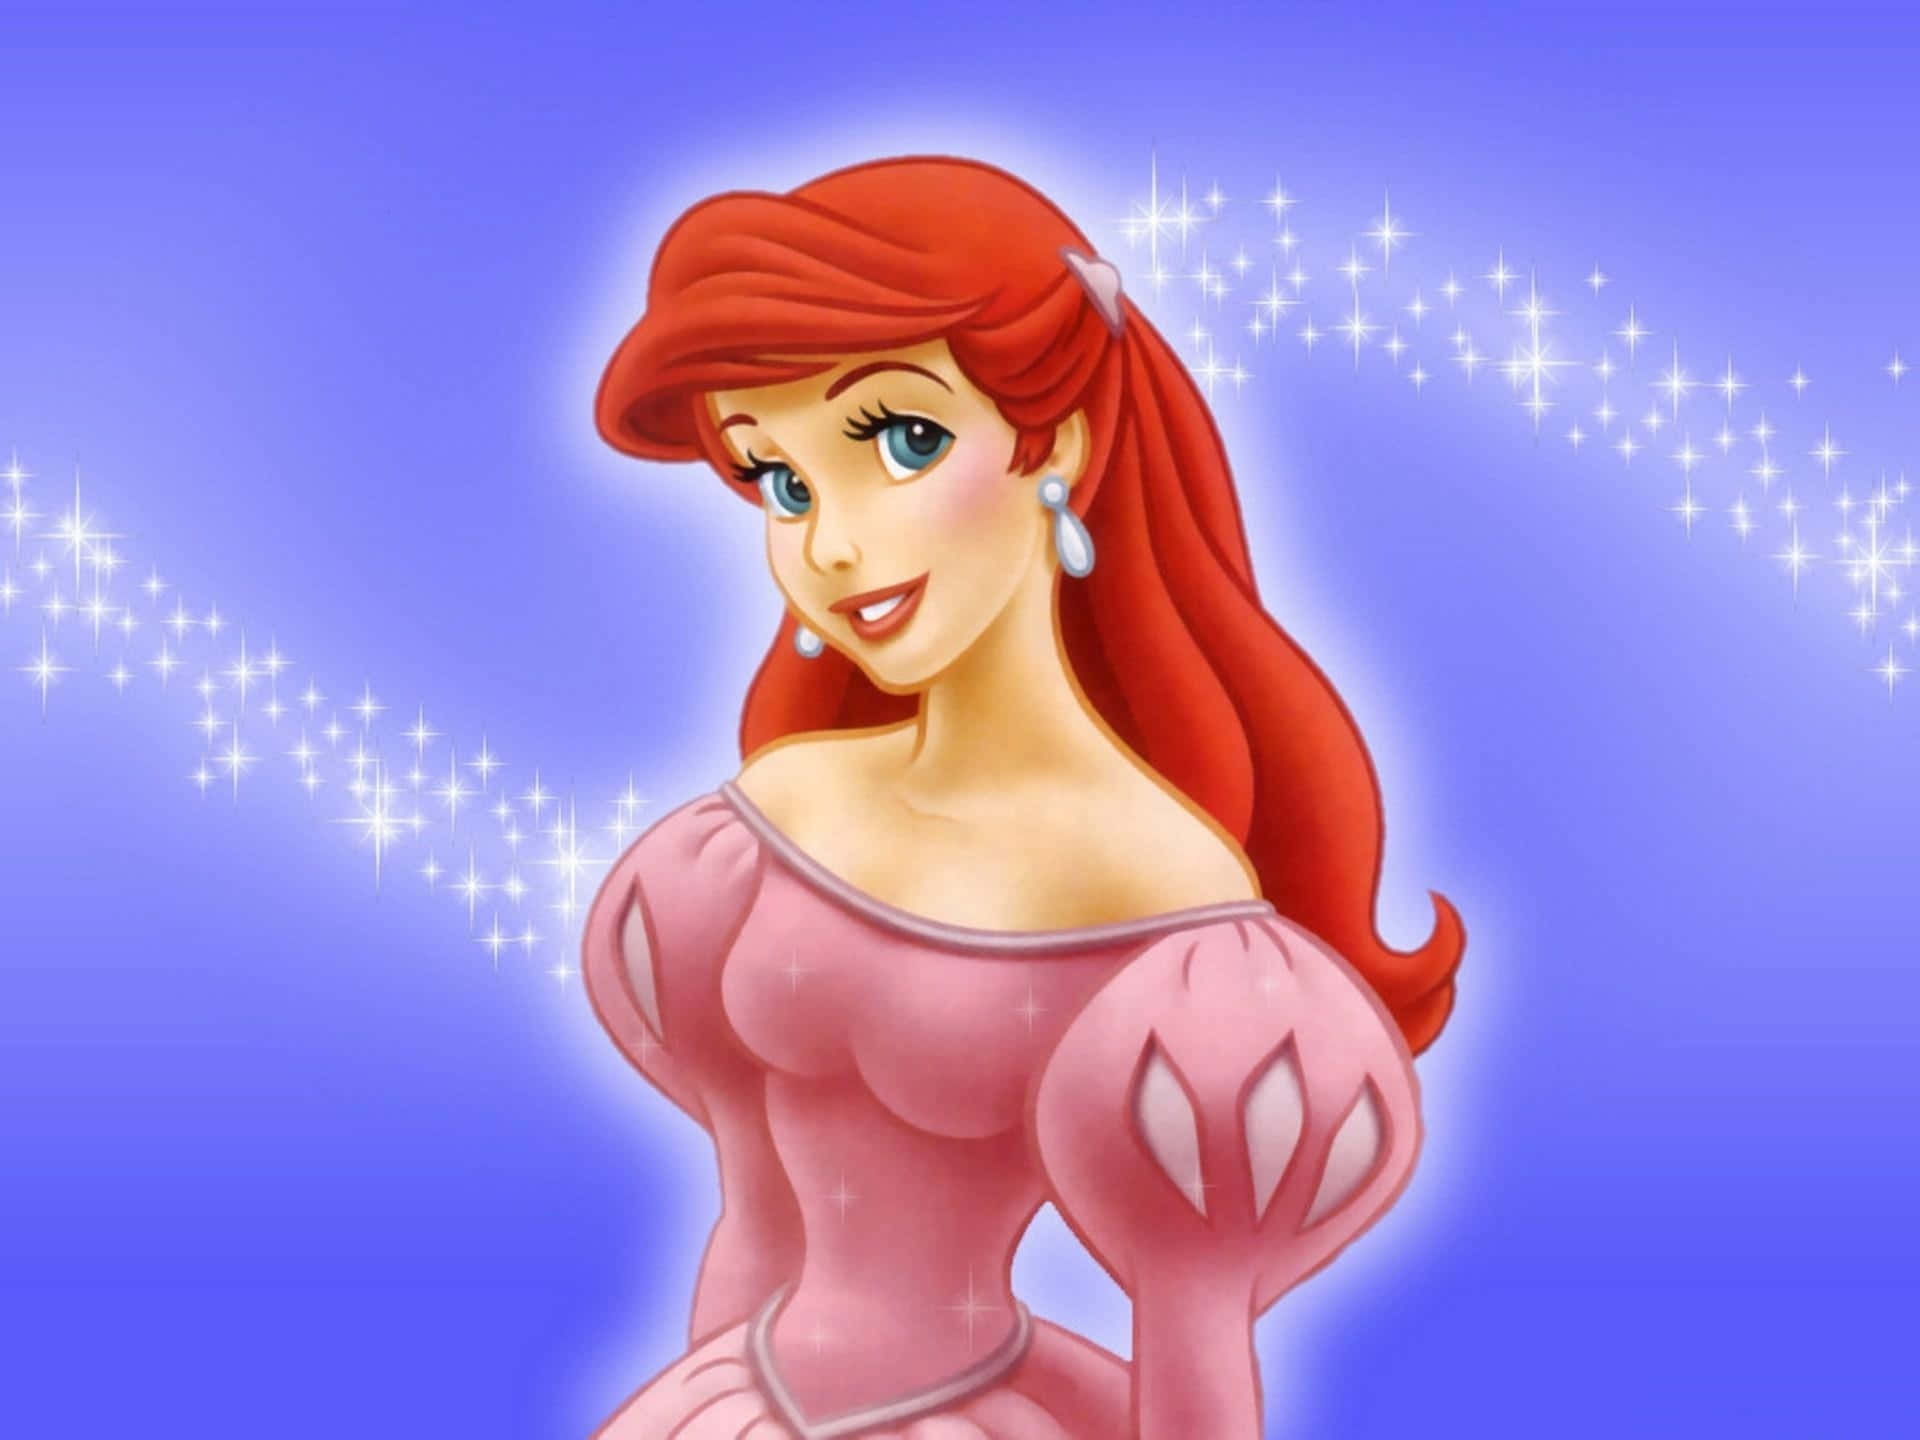 Ariel, the heroine of Disney’s Little Mermaid